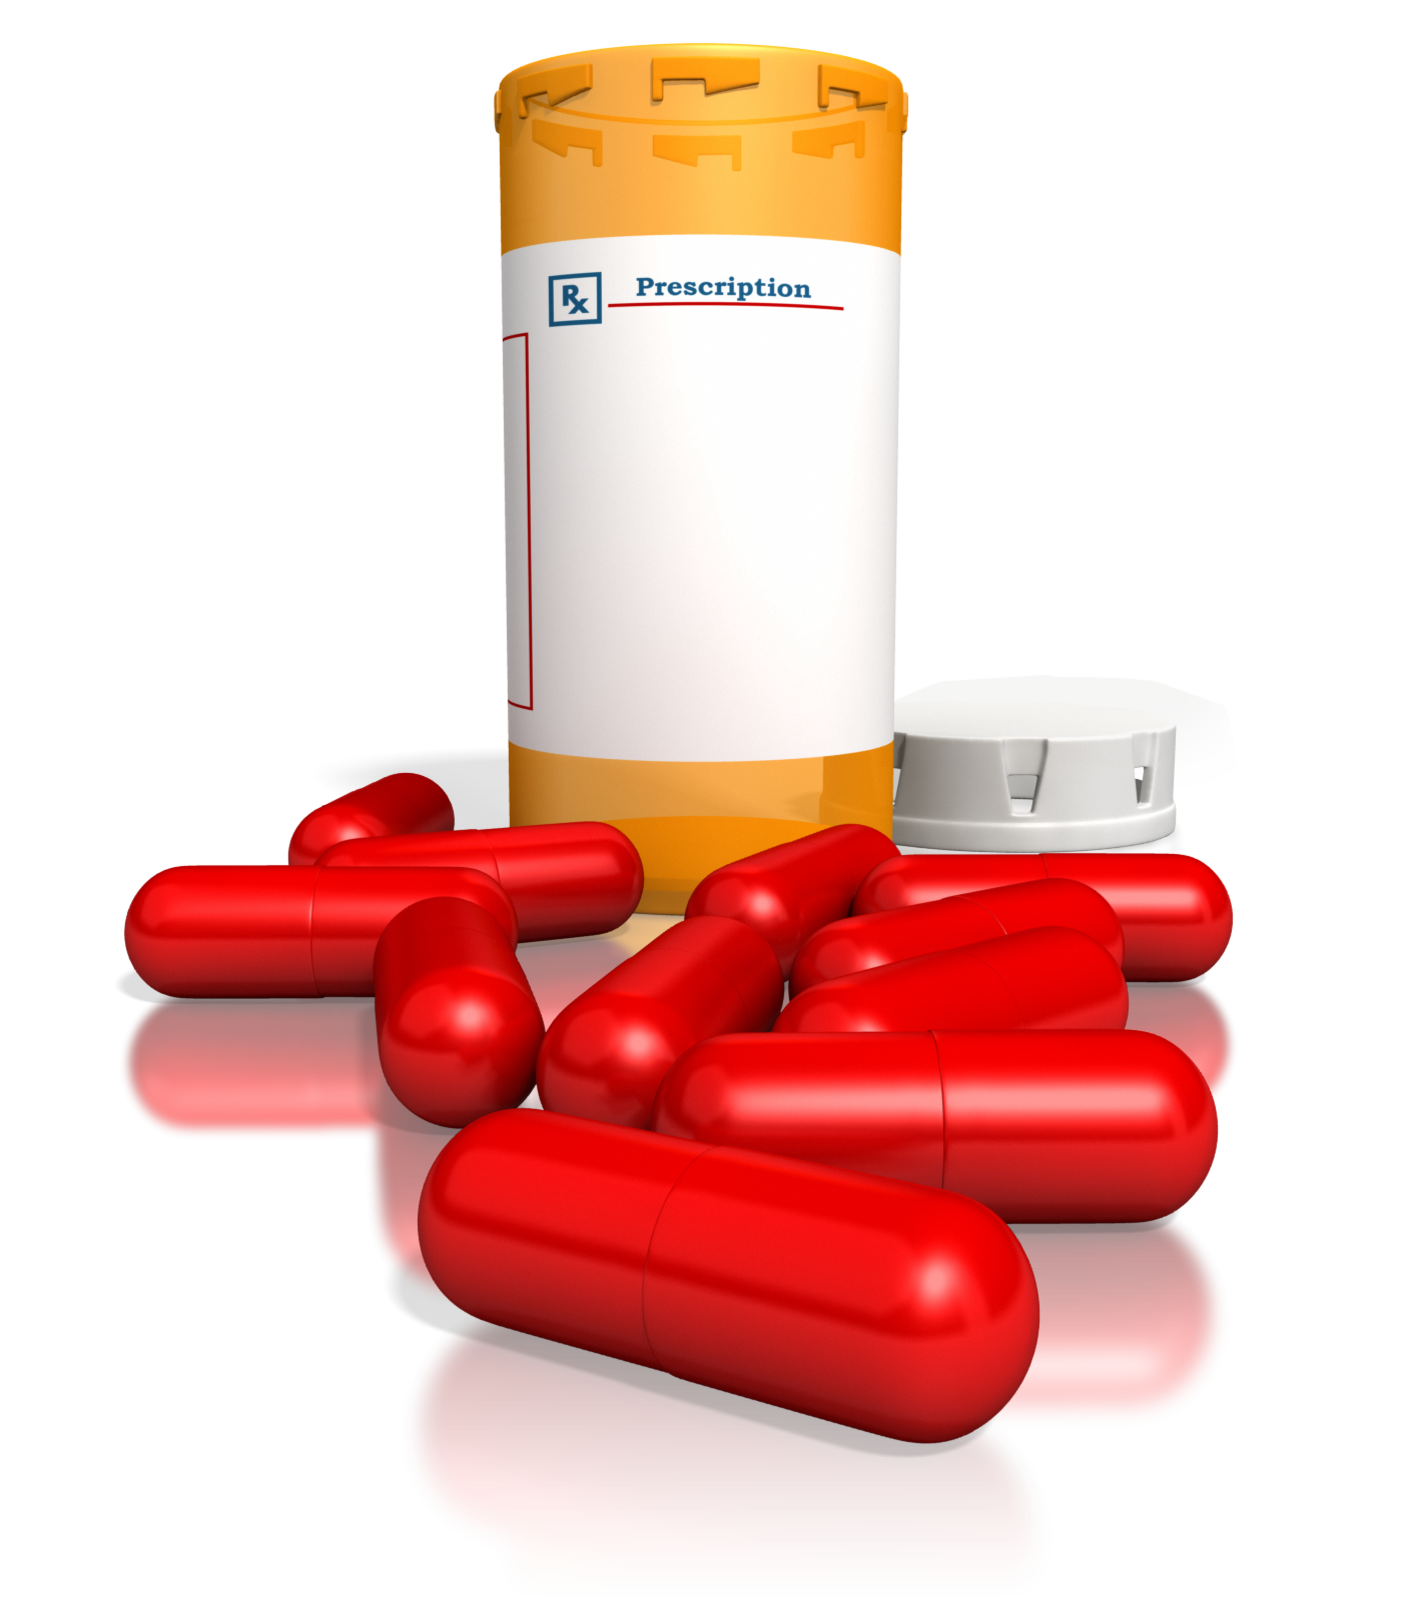 Drug pharmacy pill